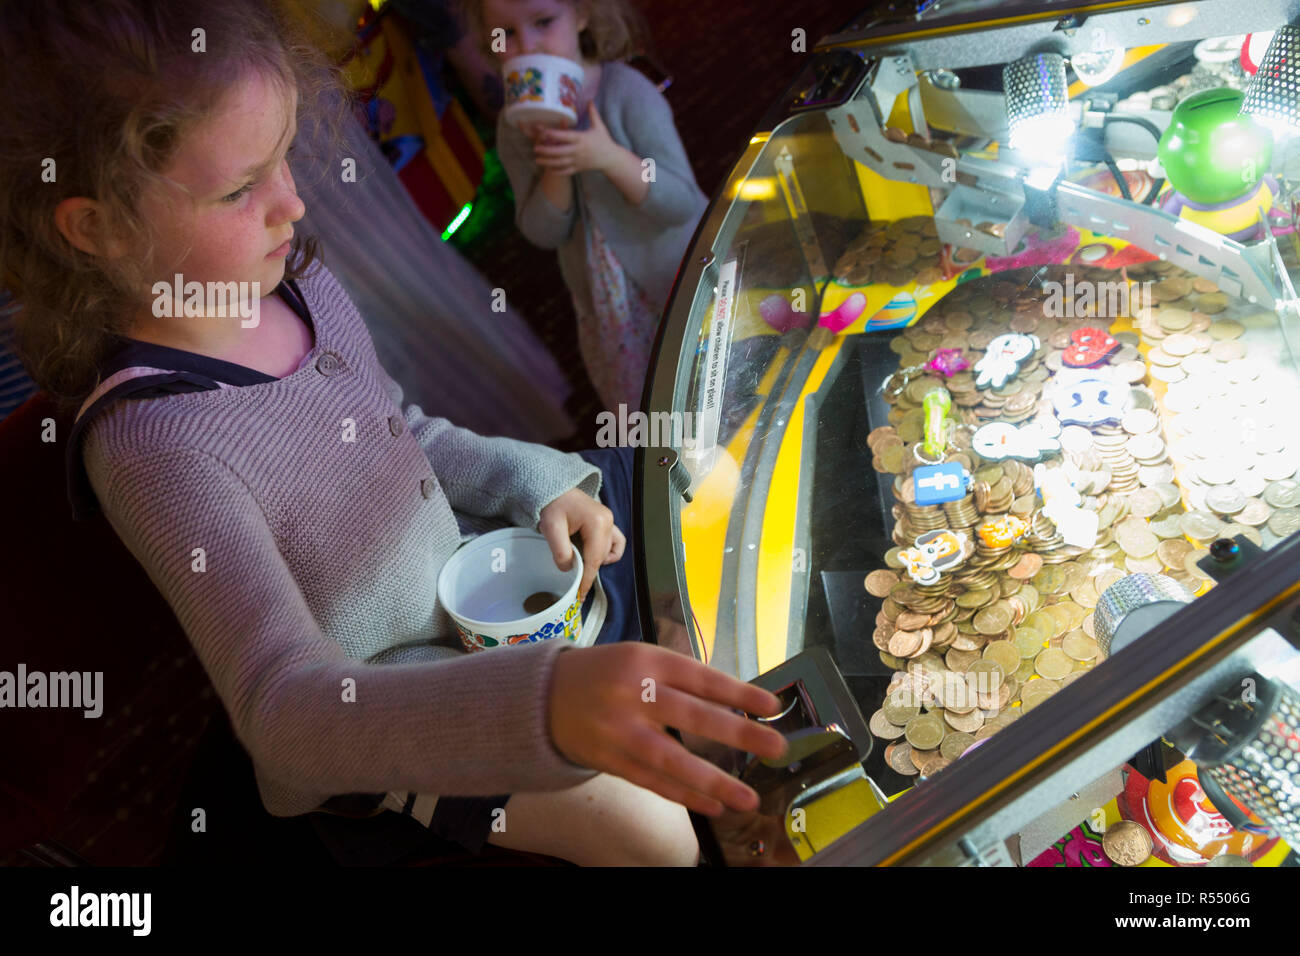 Jeune fille âgée de 6 ans / 6 ans jouant sur un coin pusher traditionnels populaires / pièces poussant en jeu pier arcade fun house. UK. (98). Banque D'Images